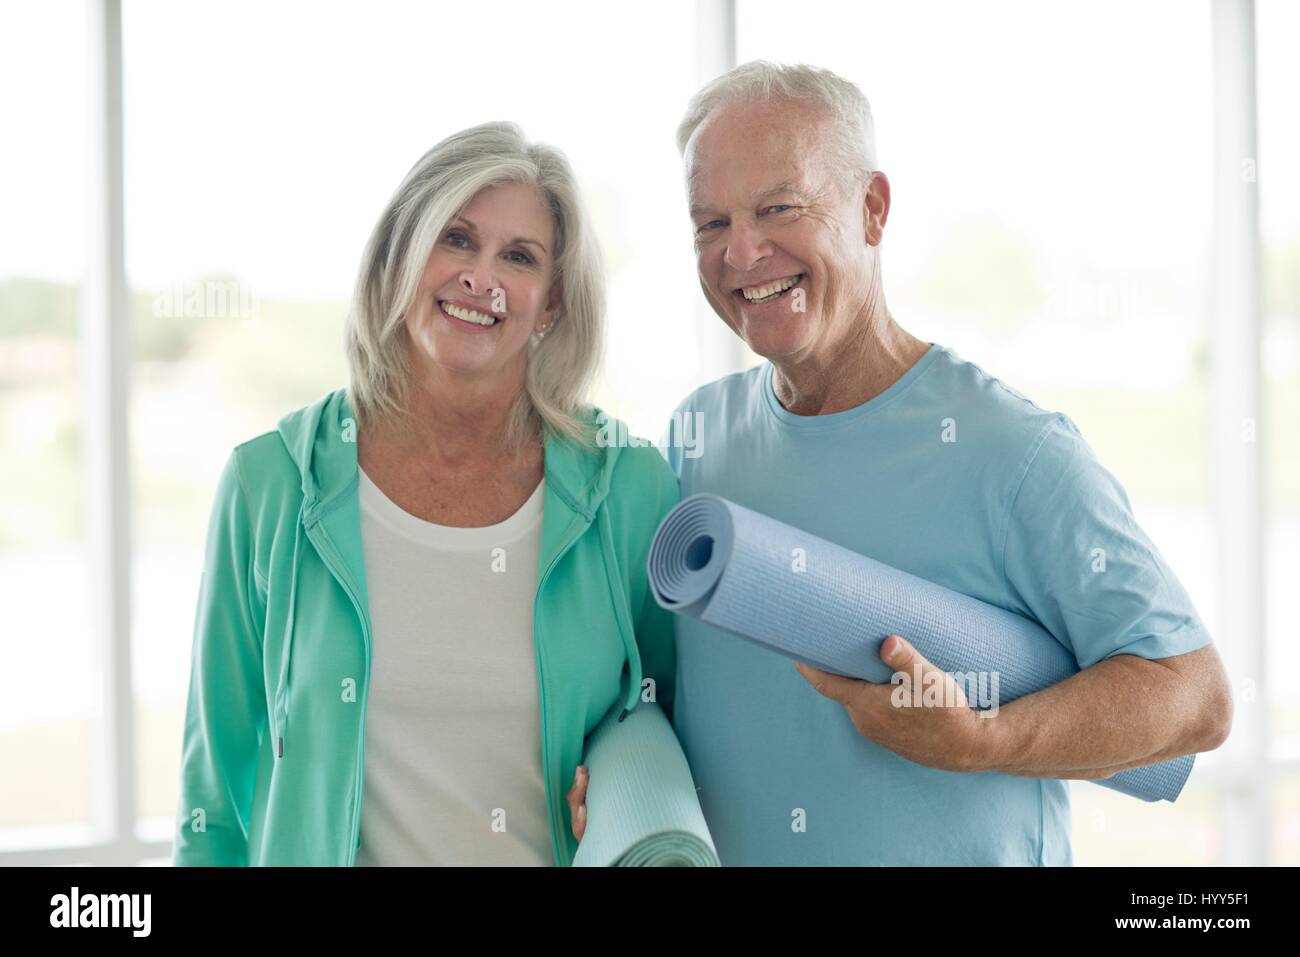 Senior couple holding yoga mats. Stock Photo